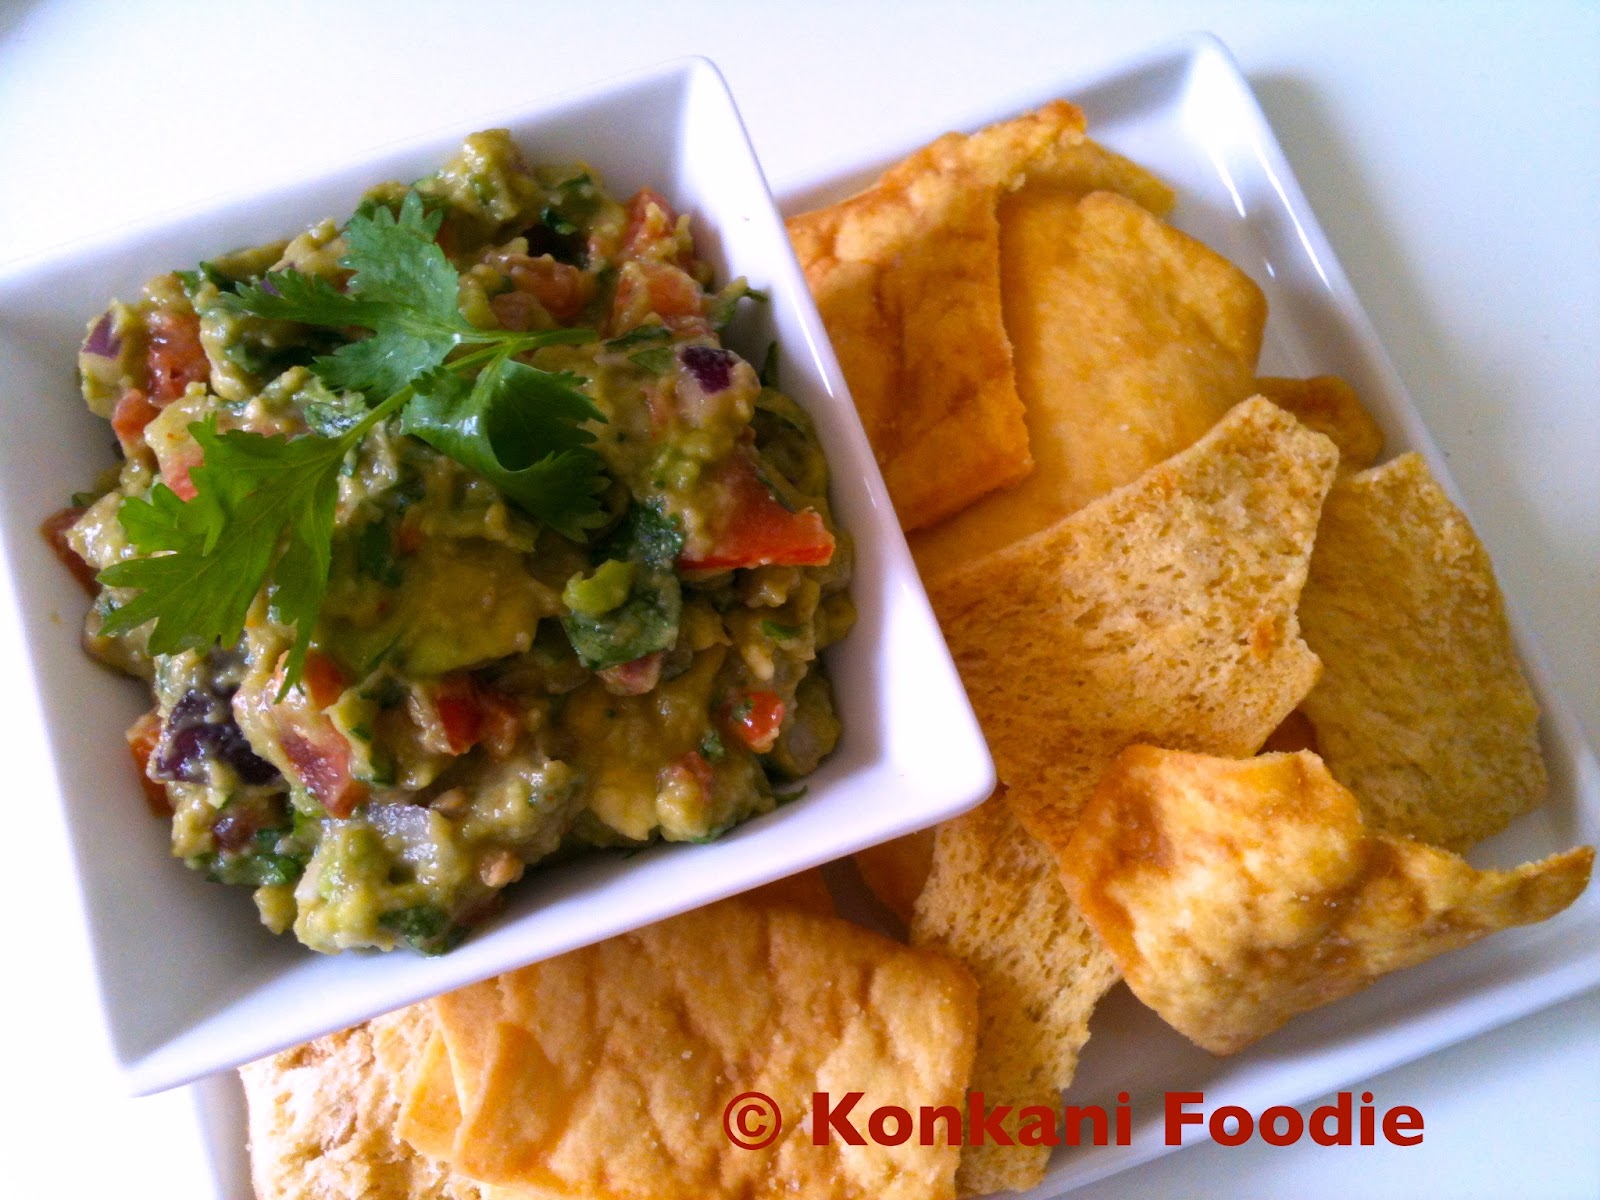 Konkani Foodie: Guacamole - A Mexican Avocado Dip